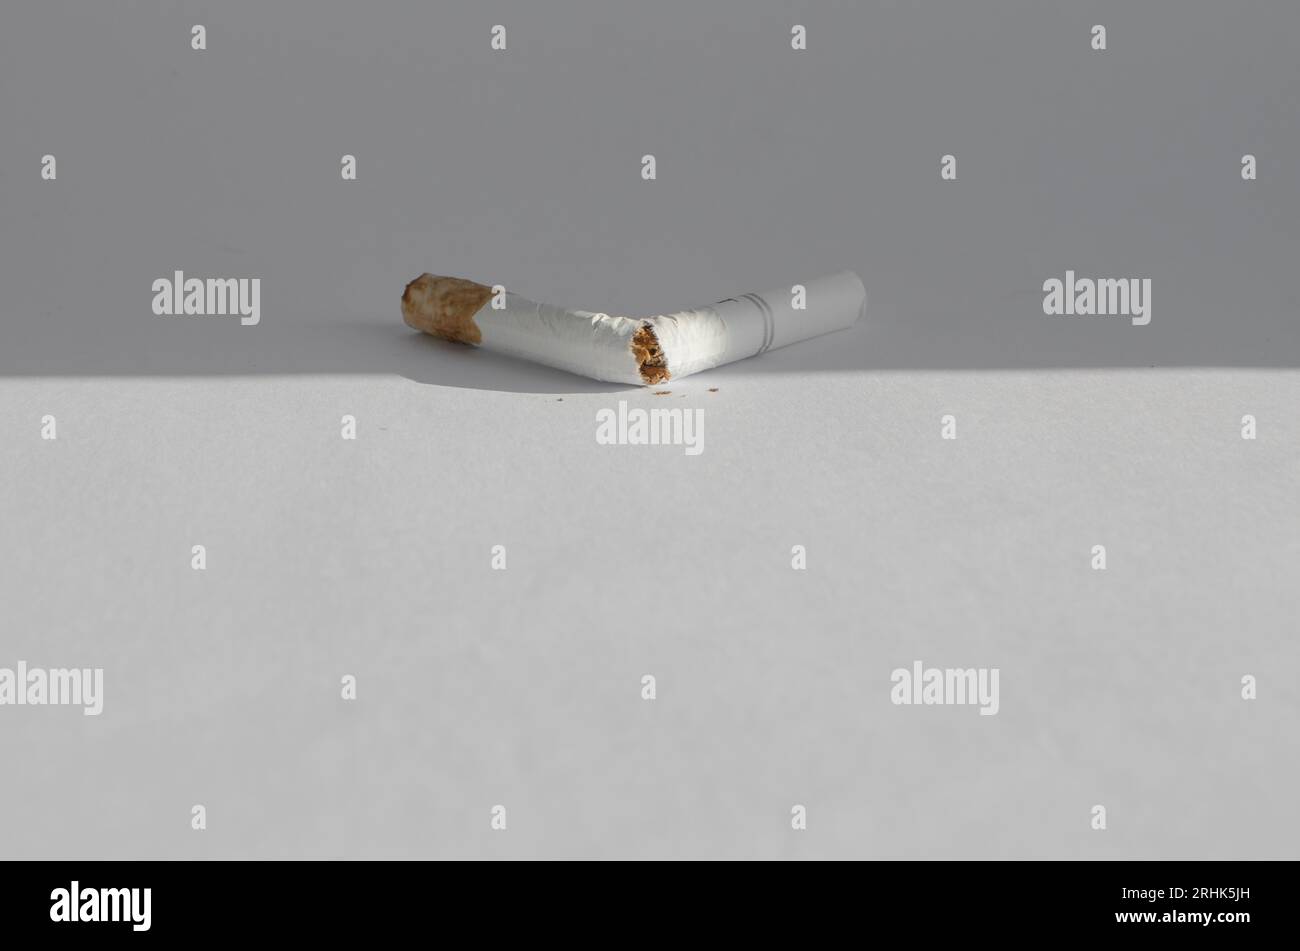 Details der Zigaretten auf einer weißen Oberfläche, die die gesundheitlichen Risiken und Krankheiten im Zusammenhang mit dem Rauchen symbolisieren. Stockfoto